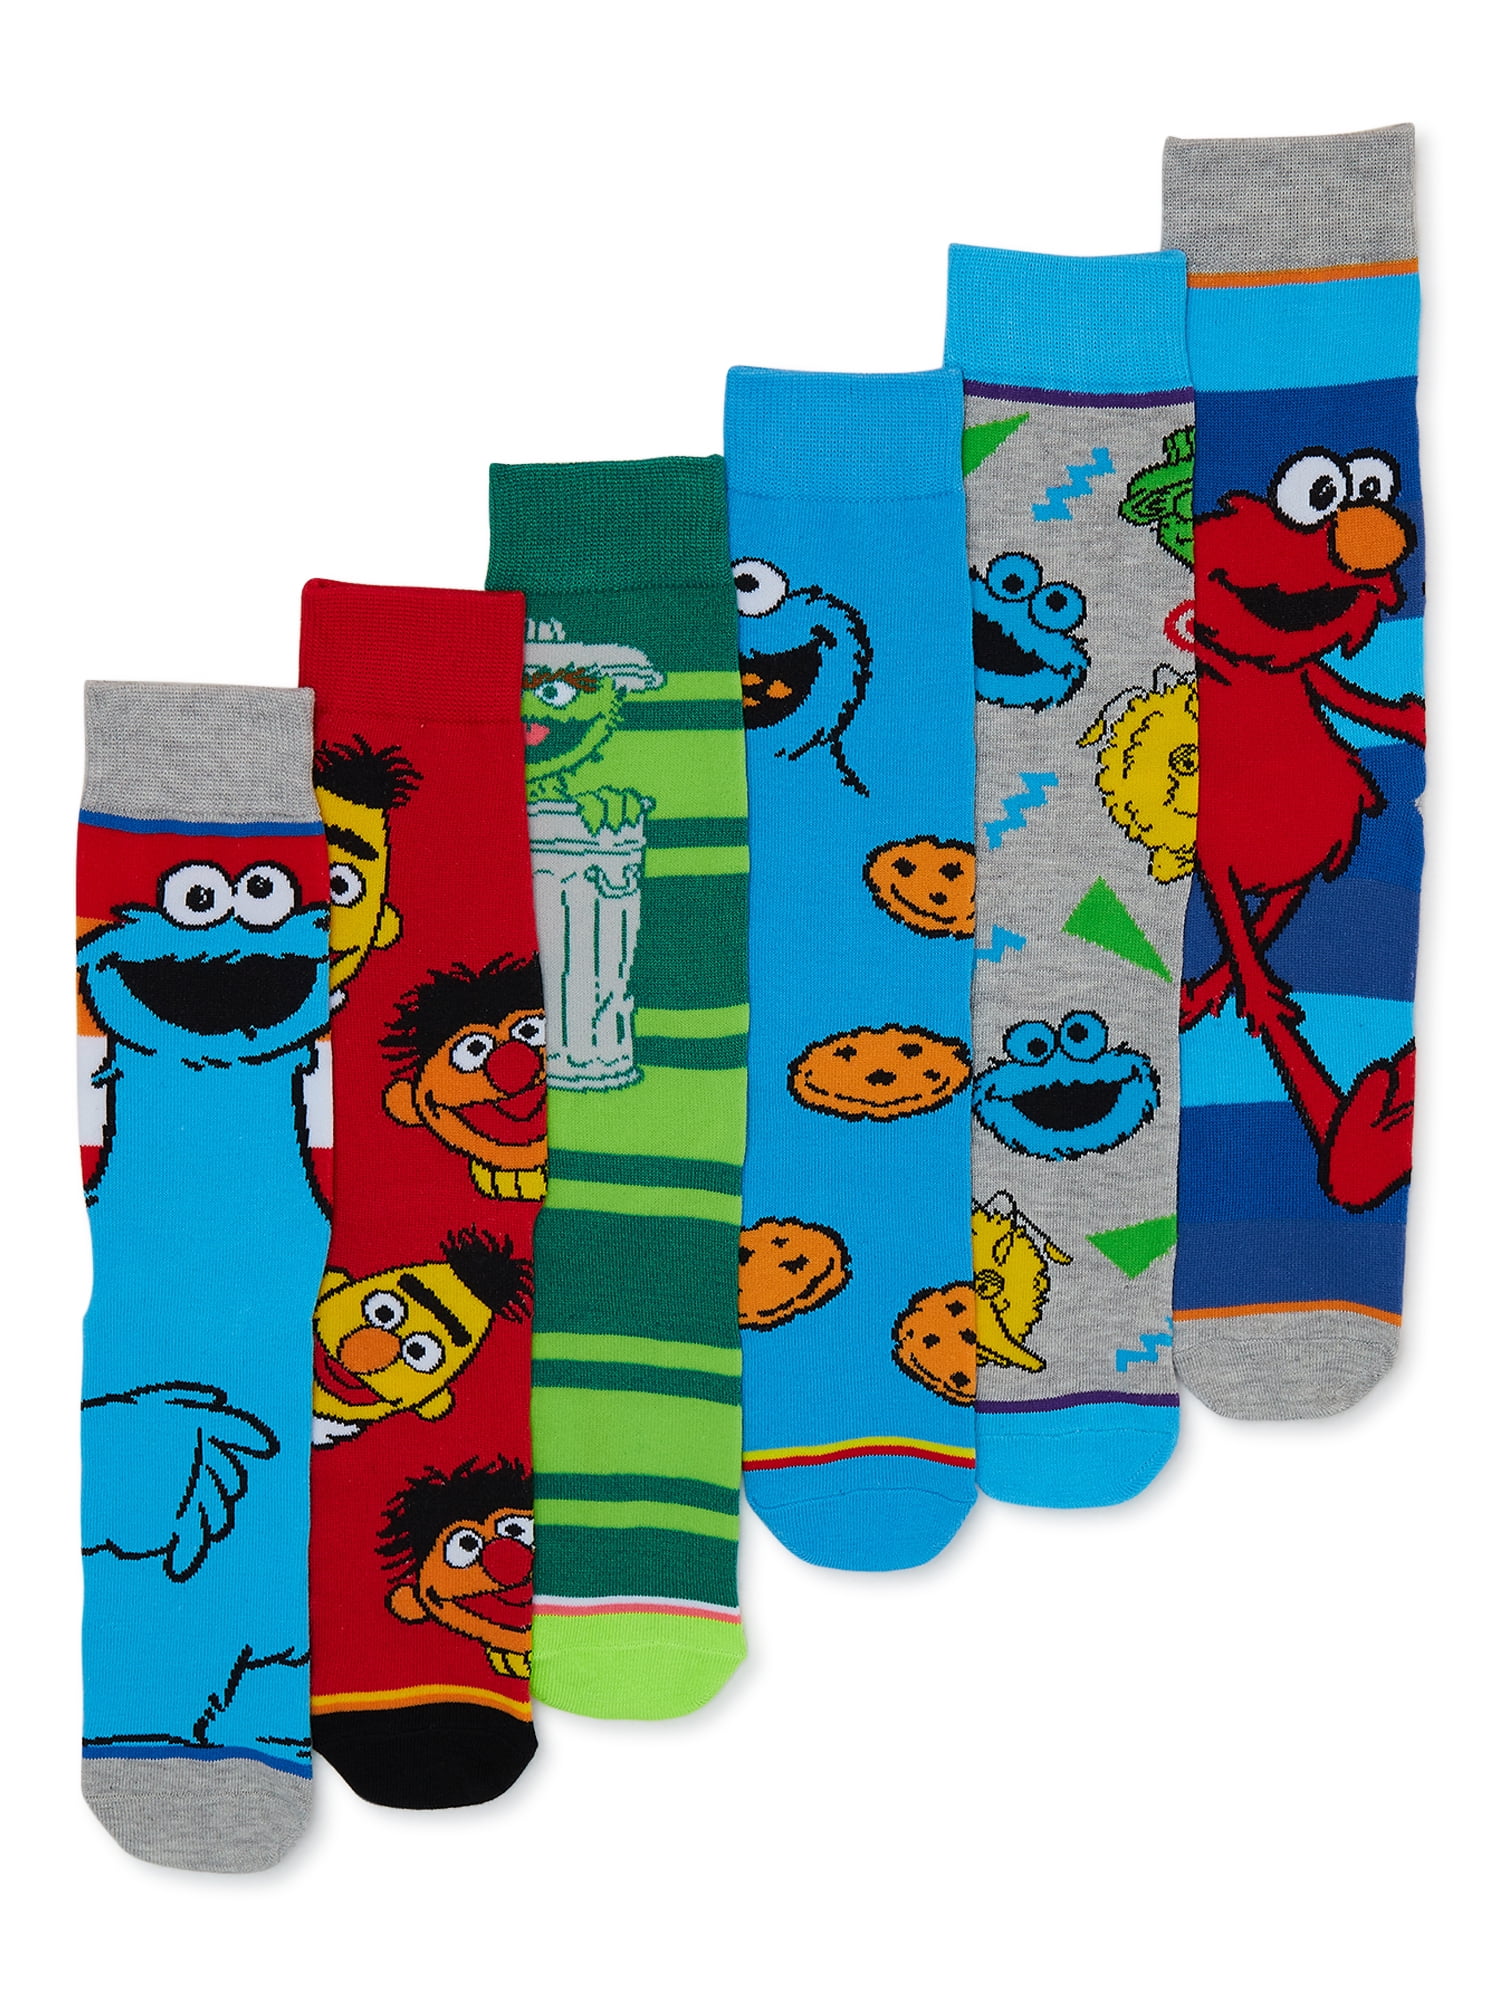 Sesame Street Men's Socks, 6-Pack